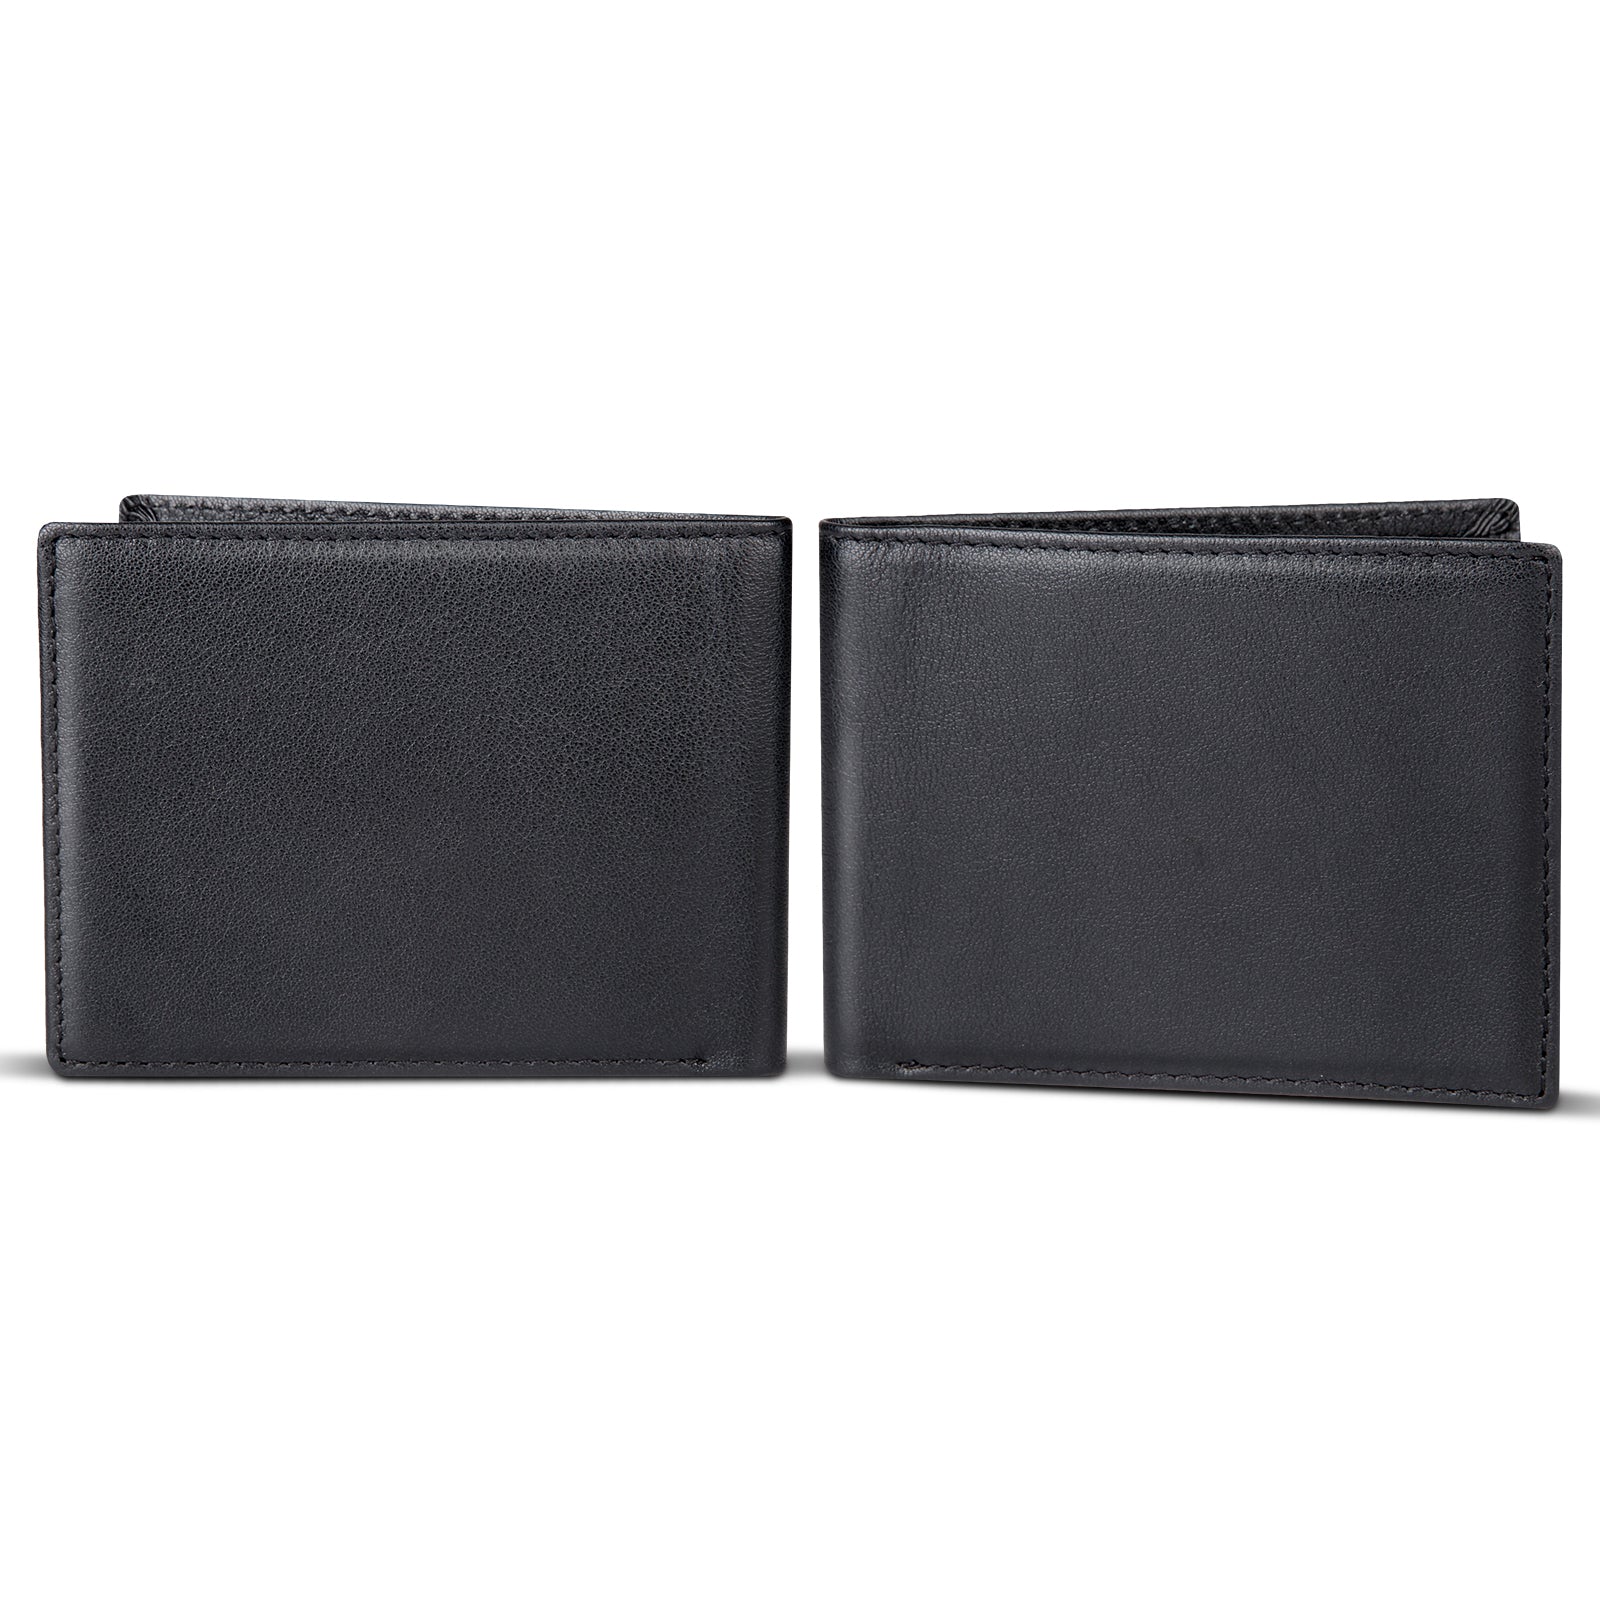 Polare Full Grain Leather Wallet For Men RFID Blocking Slim Billfold (Black,Front/Back)